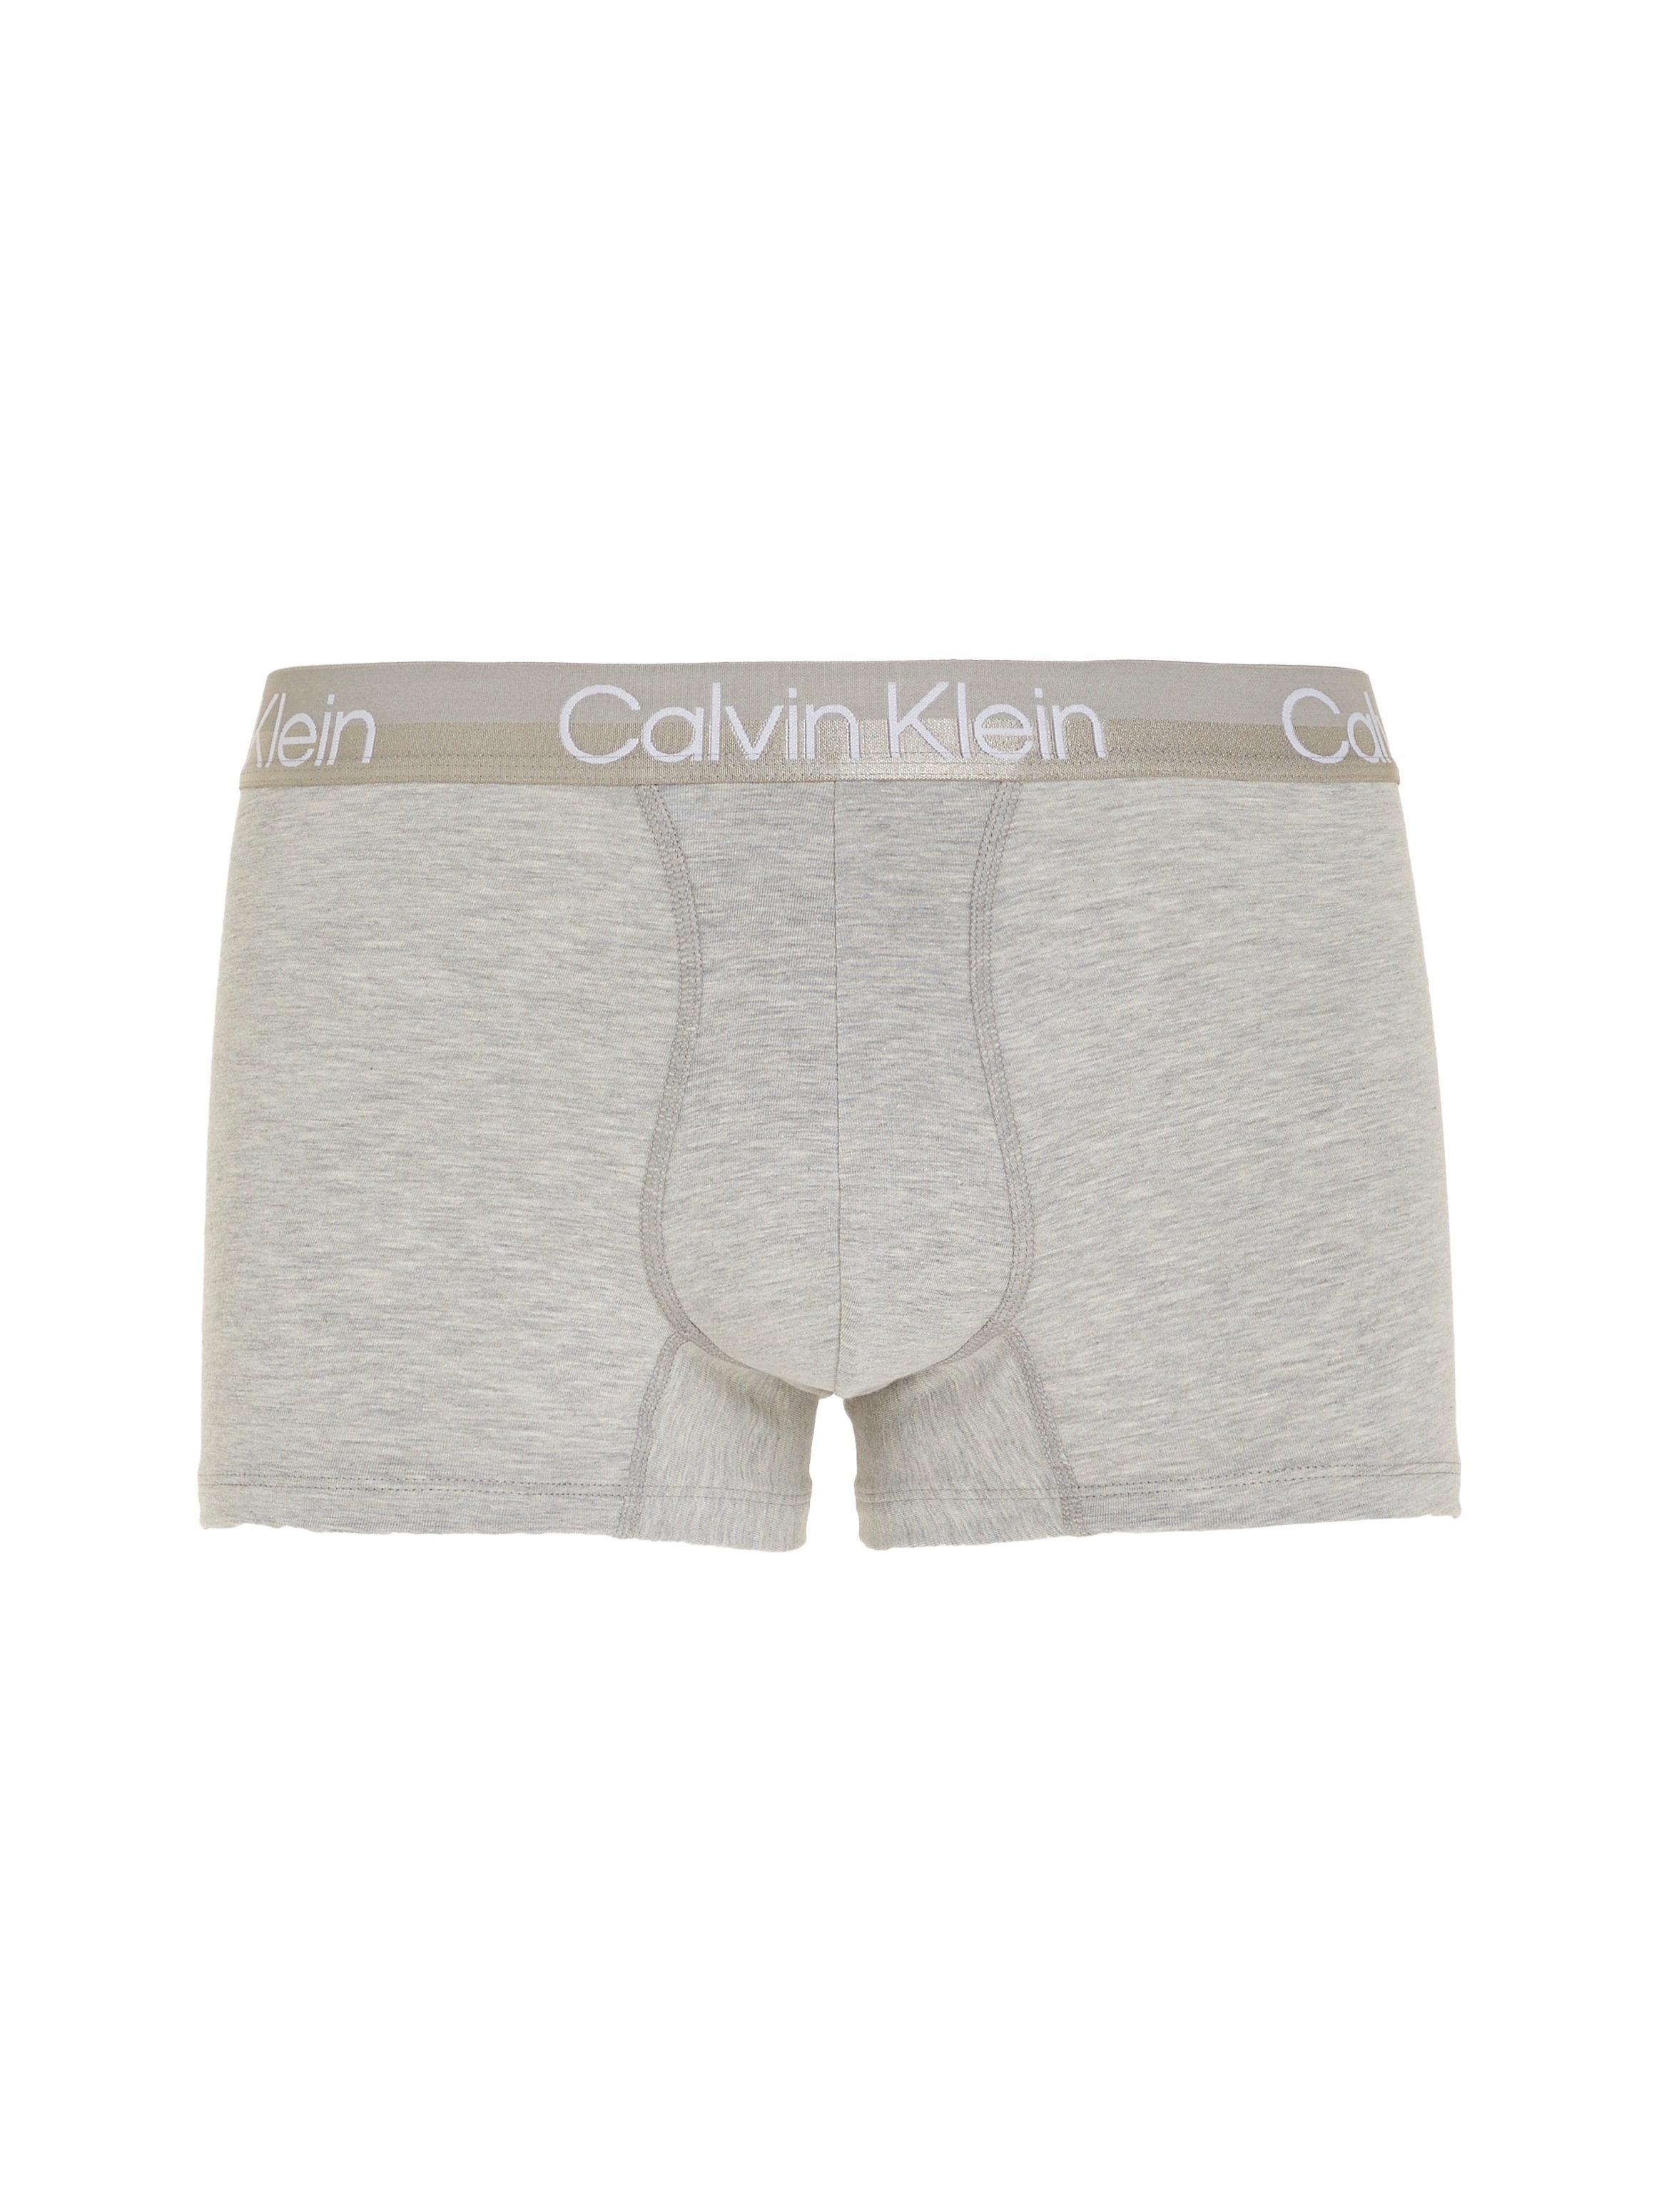 Calvin Klein Herren Trunk 3PK Badehose, Weiß/Schwarz/Grau meliert, L